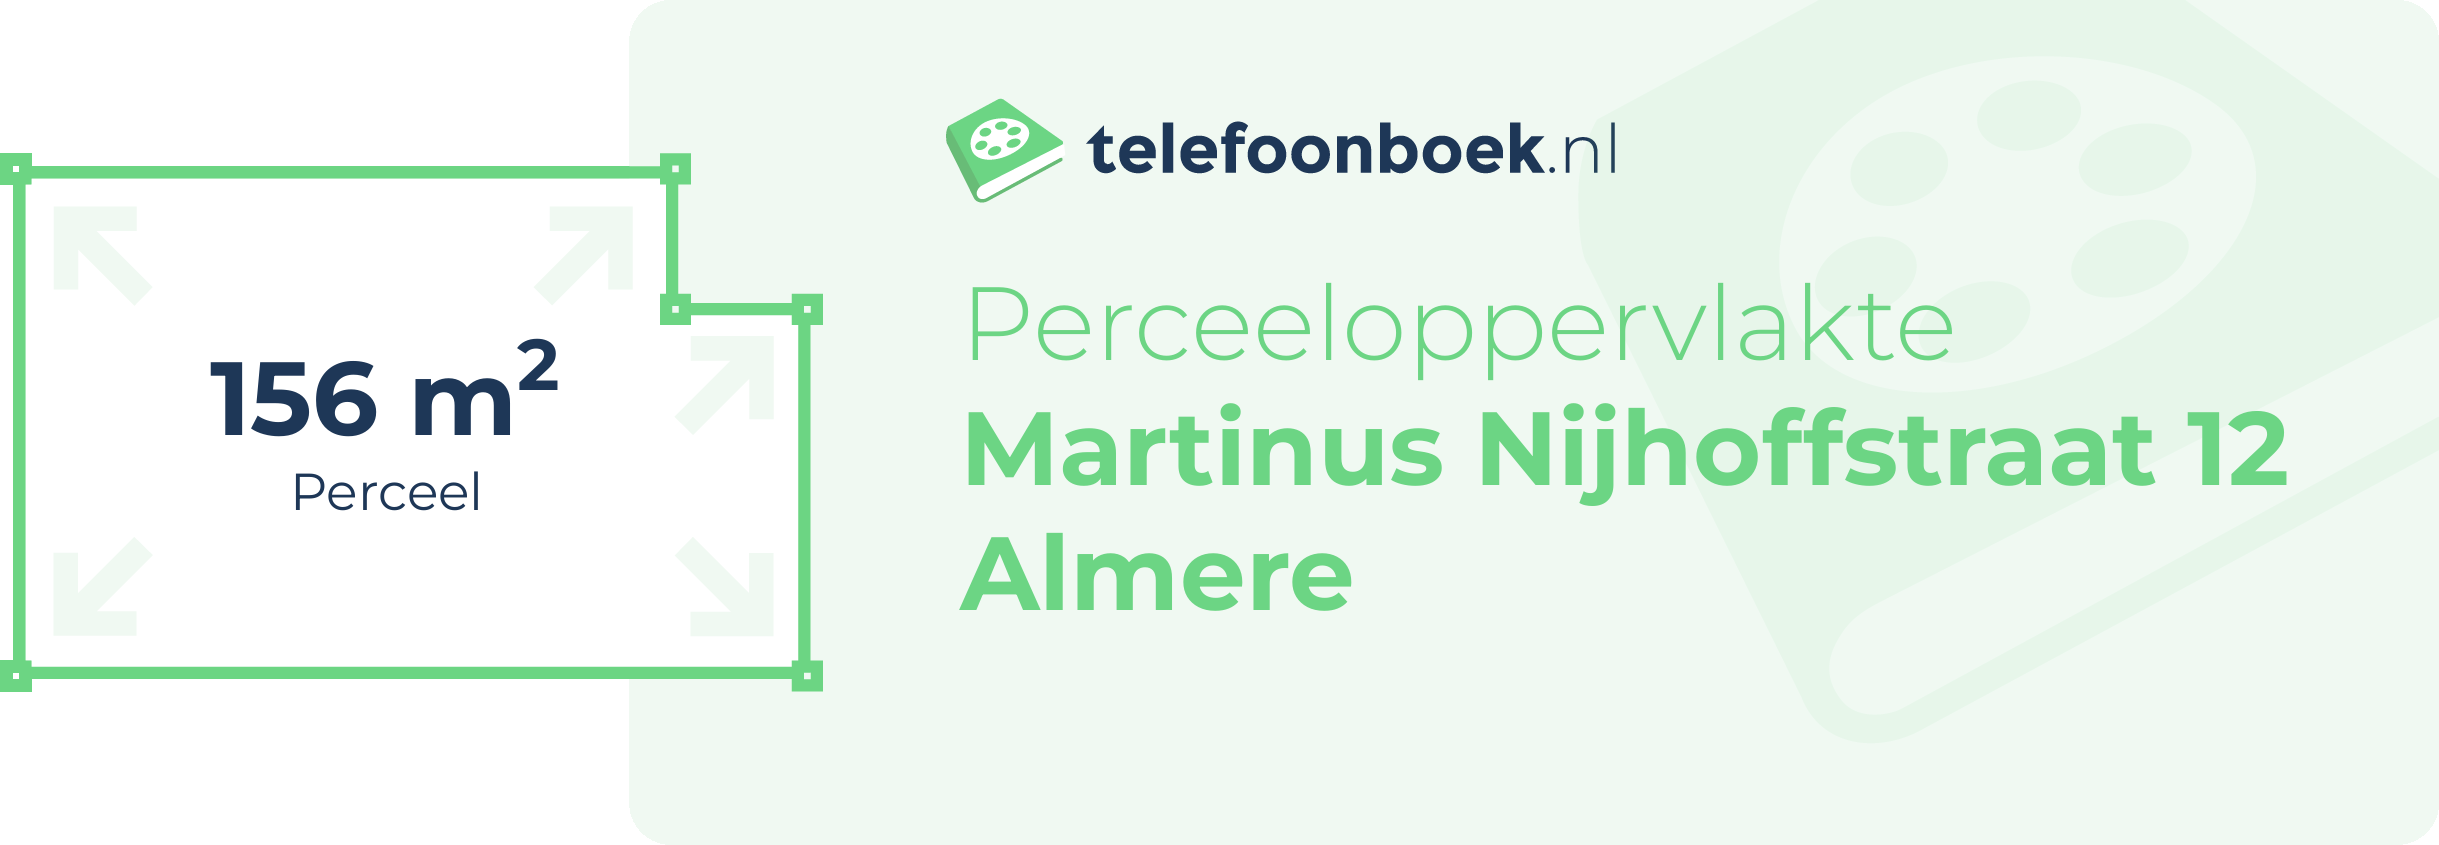 Perceeloppervlakte Martinus Nijhoffstraat 12 Almere